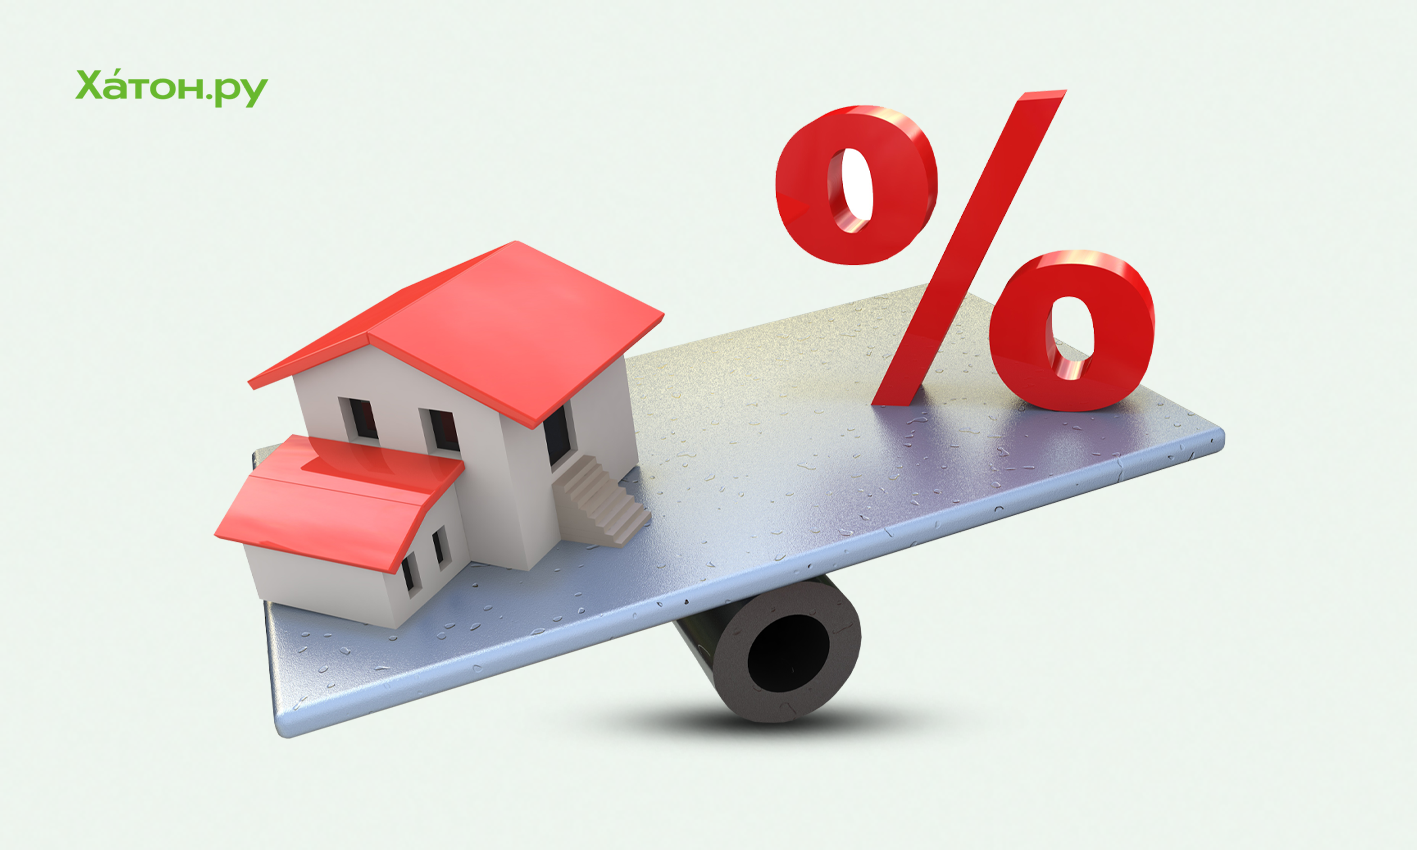 Аксаков: ставка по льготной ипотеке в РФ может вырасти с 7% до 12%